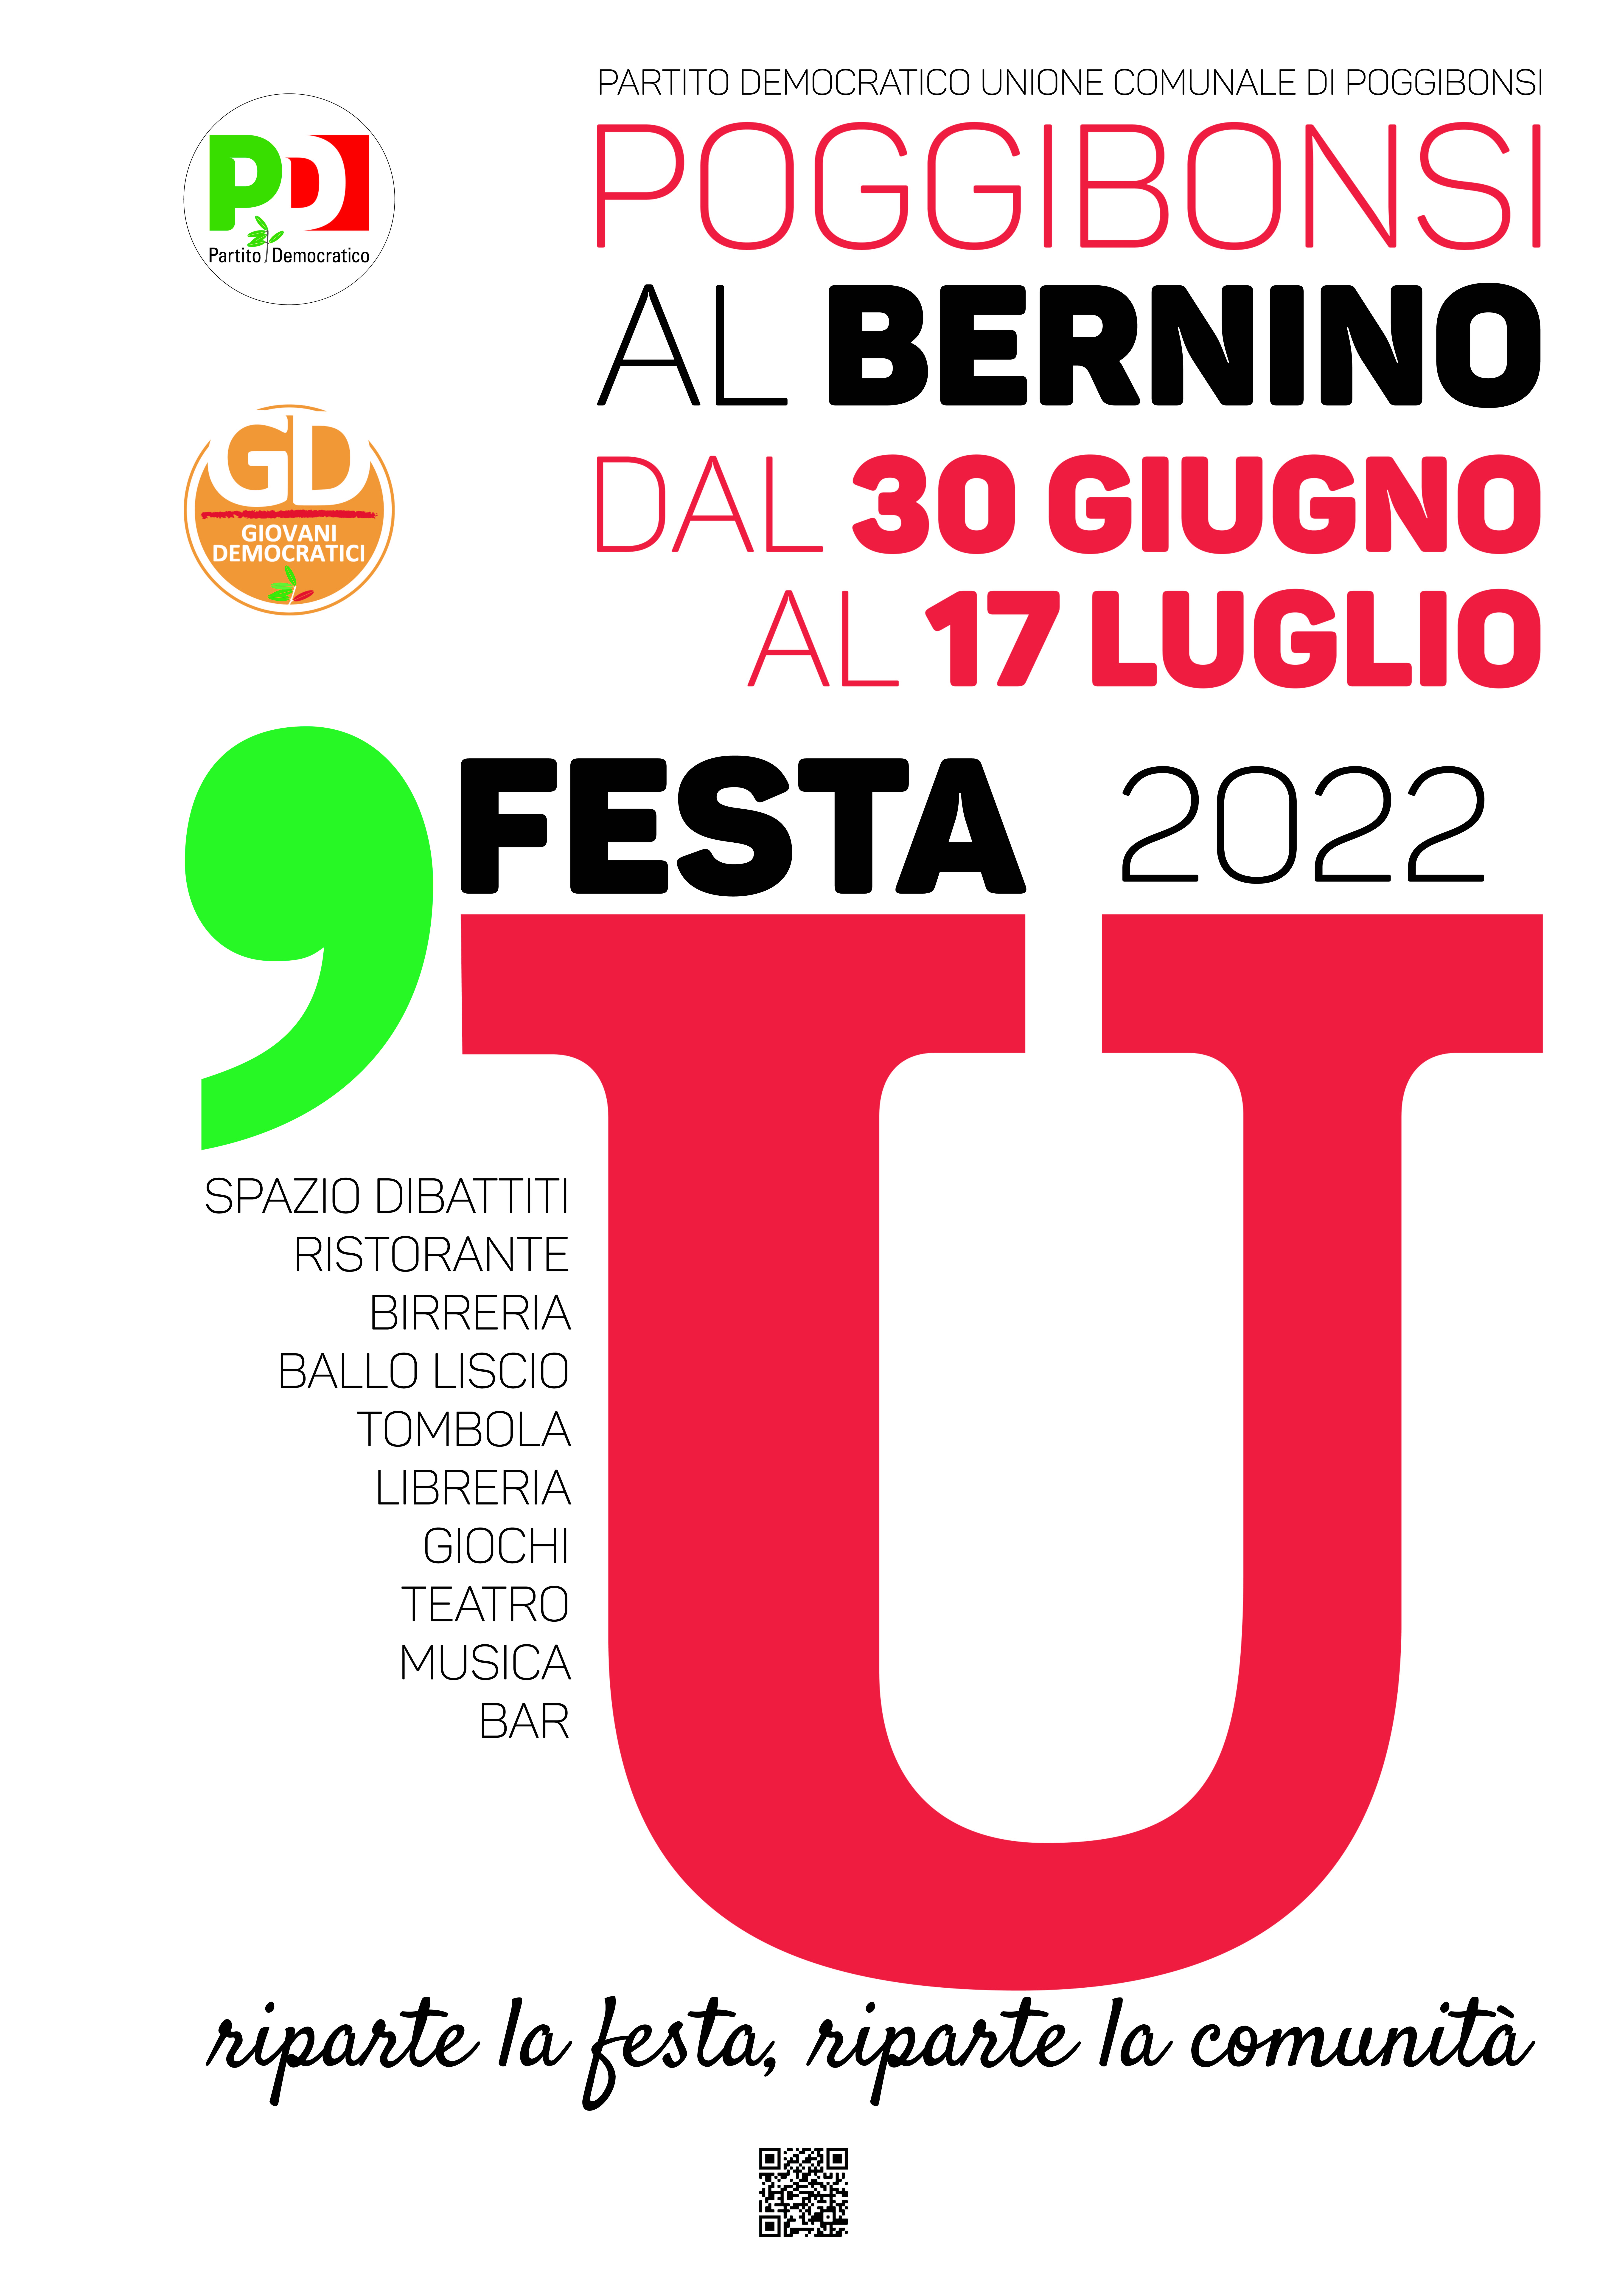 FESTA U 22 manifesto-01